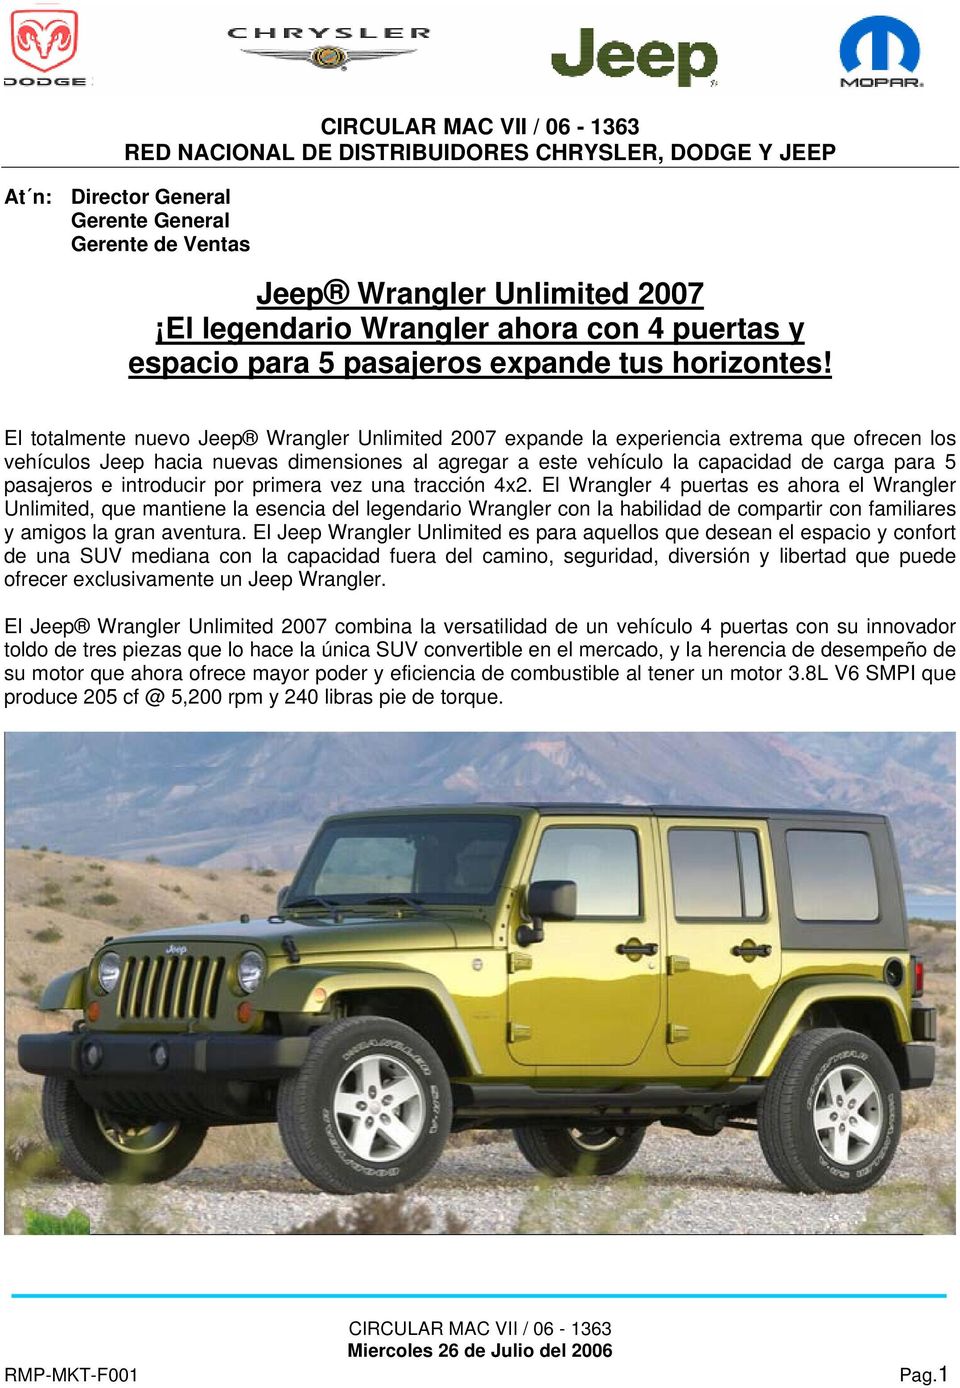 El totalmente nuevo Jeep Wrangler Unlimited 2007 expande la experiencia extrema que ofrecen los vehículos Jeep hacia nuevas dimensiones al agregar a este vehículo la capacidad de carga para 5